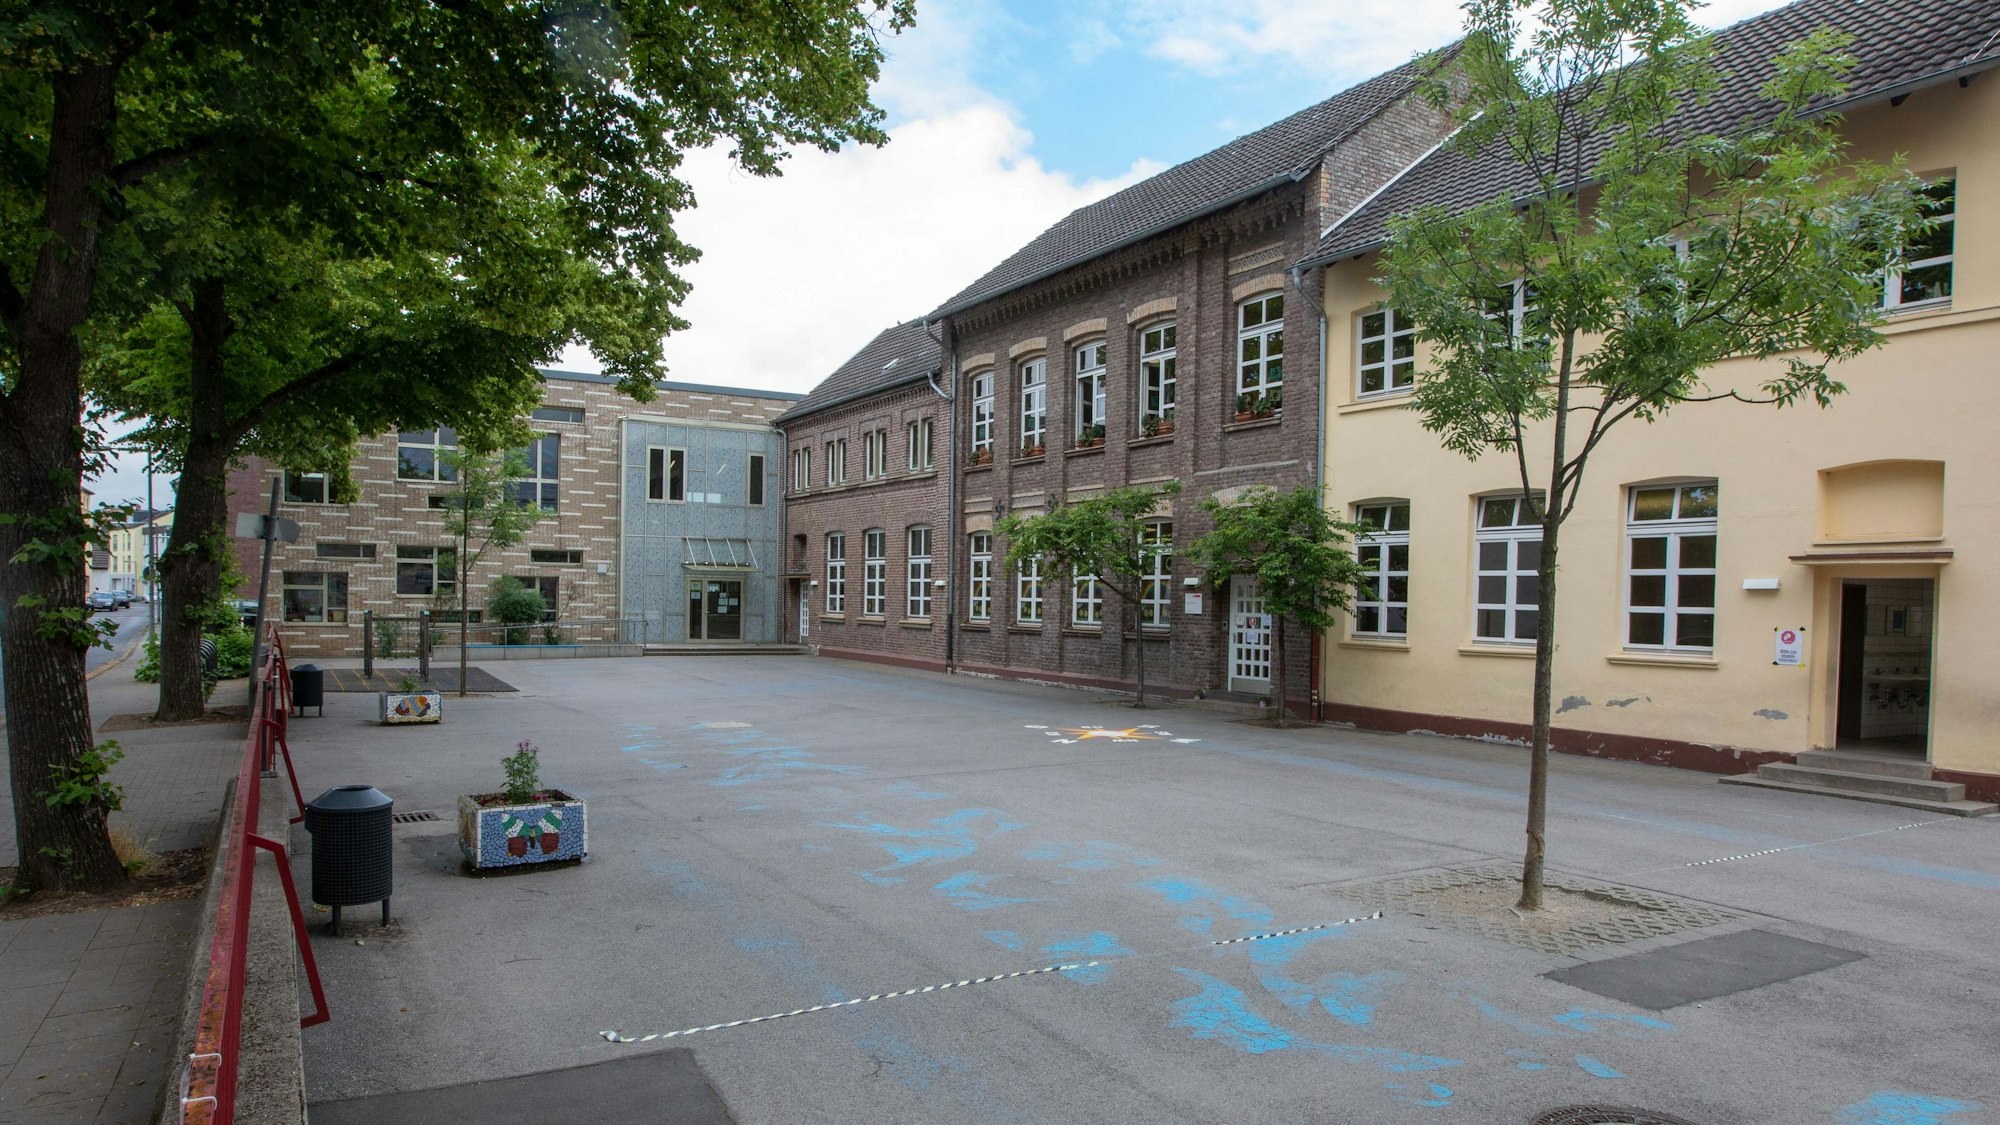 Gemeinschaftsgrundschule Hohe Straße in Ensen